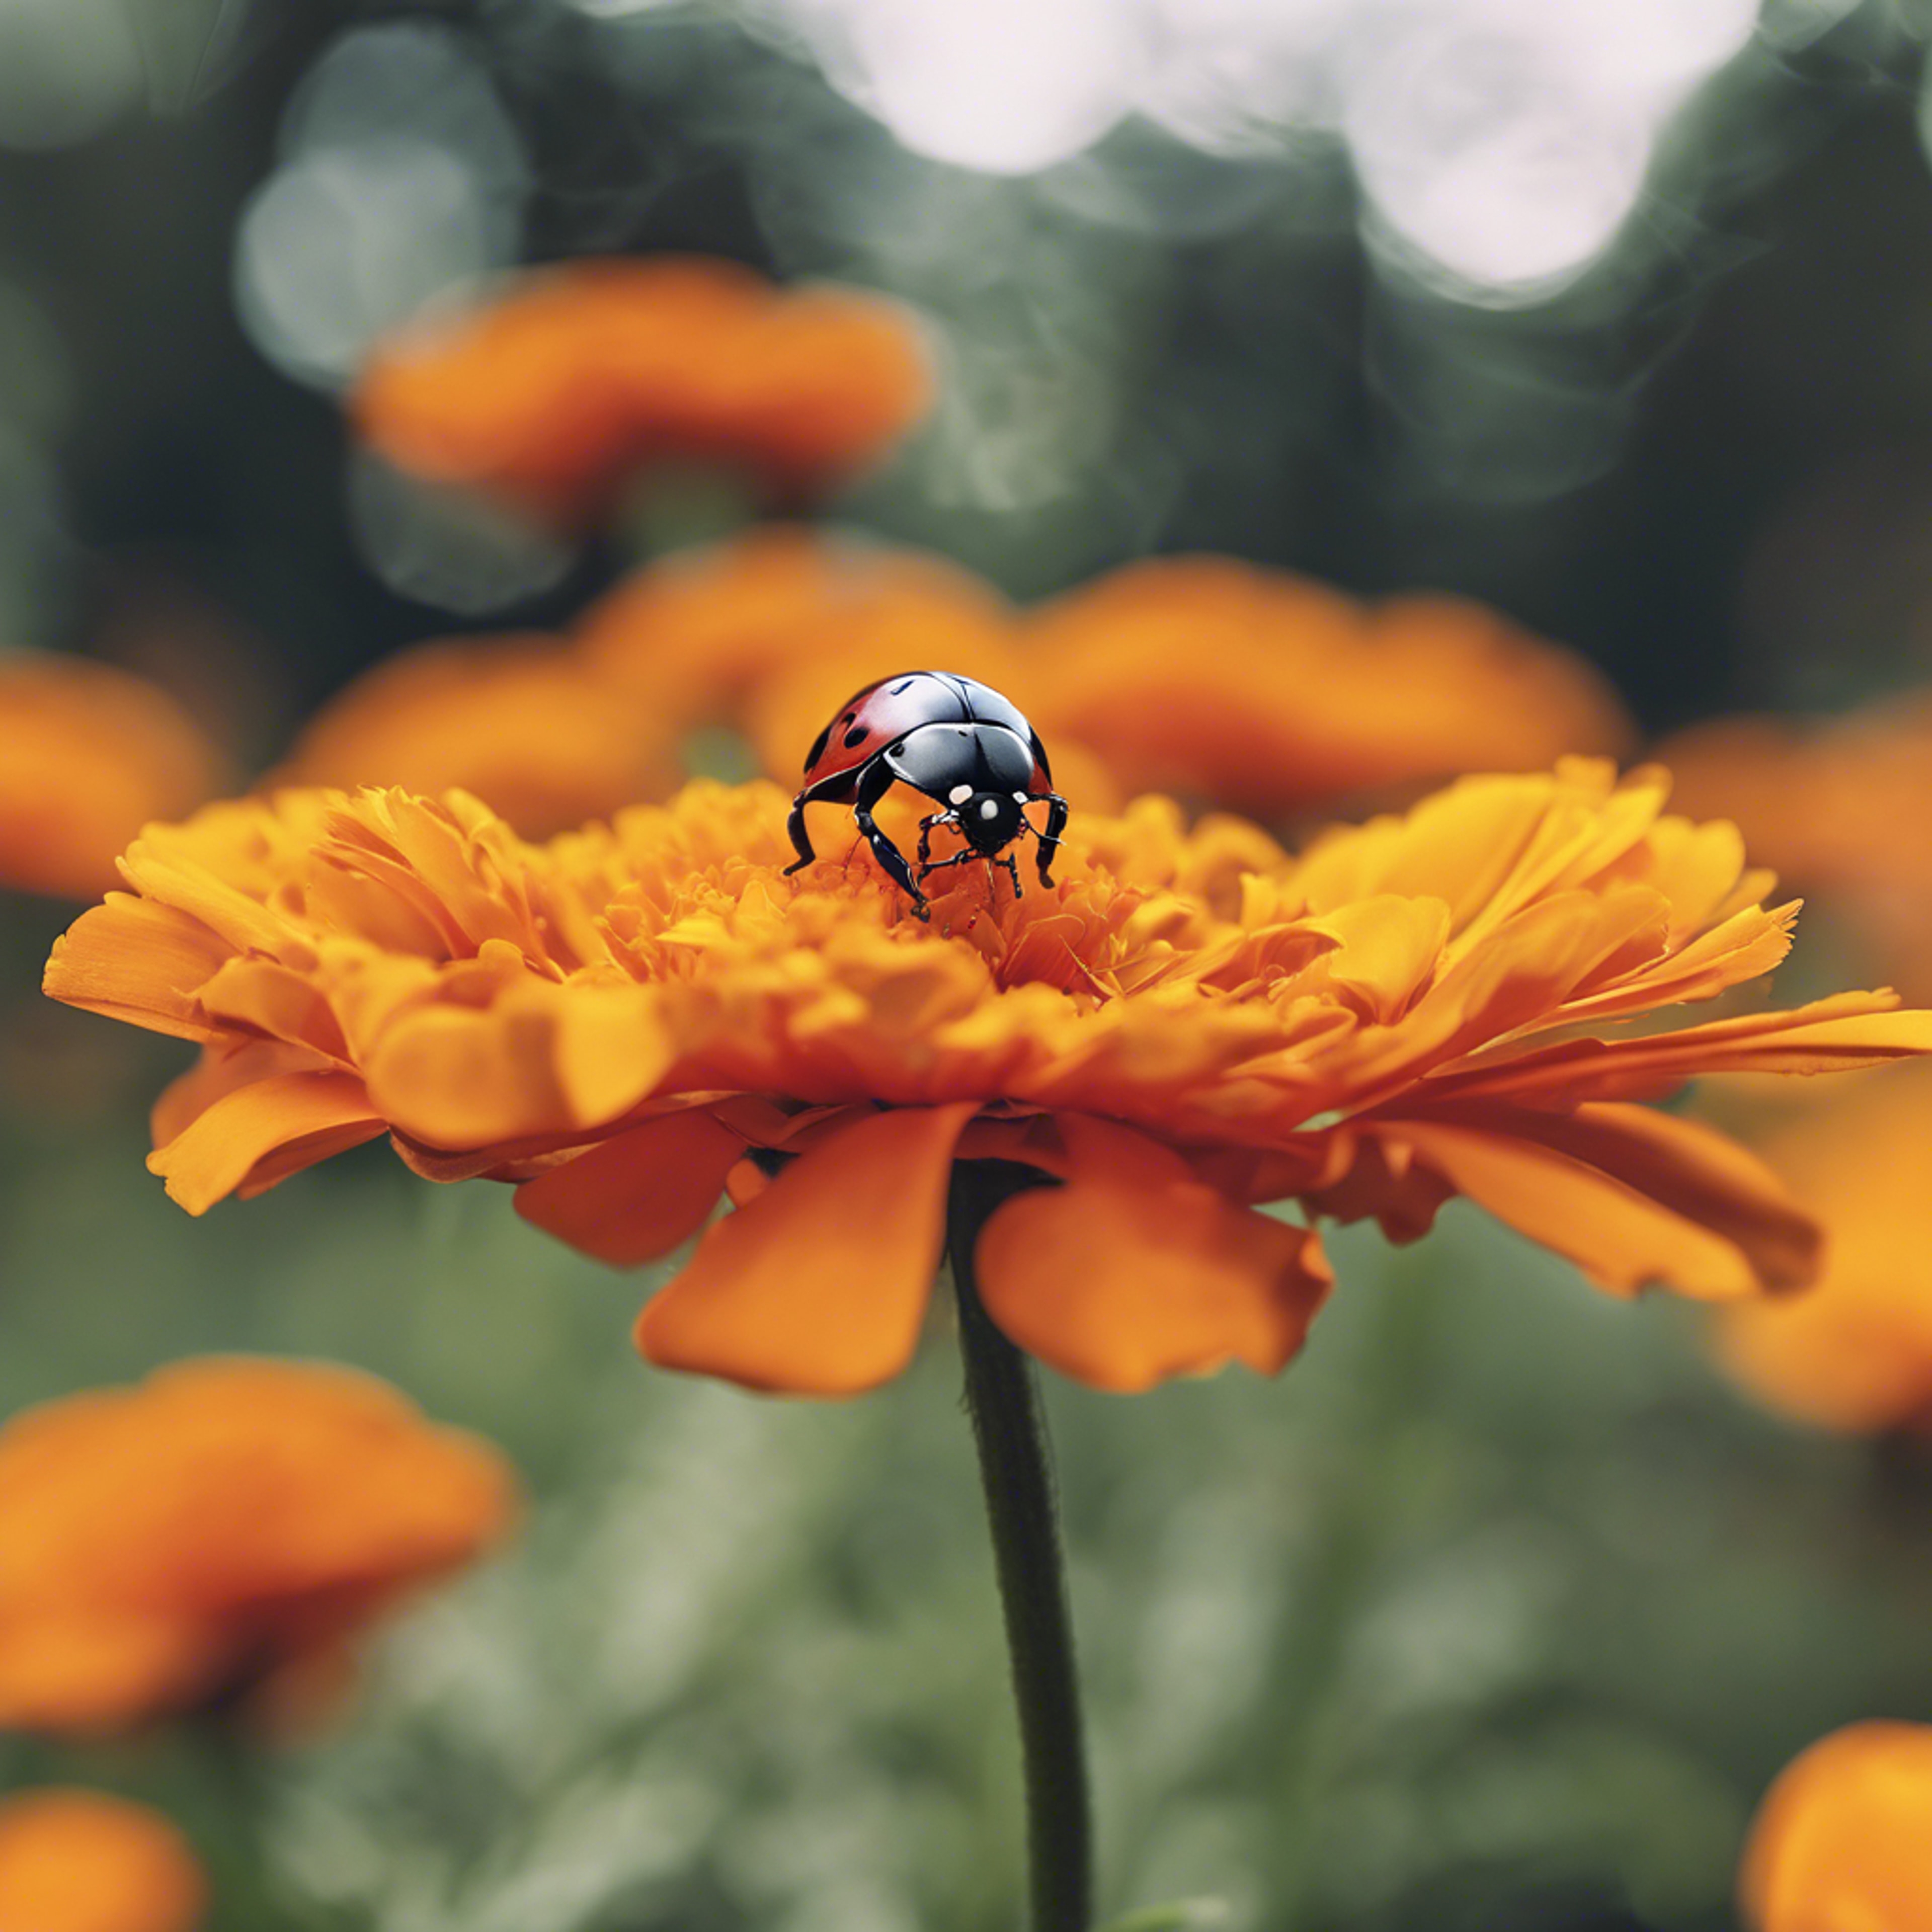 A ladybug exploring the vibrant petals of a blooming marigold.壁紙[f3e999bf307c45418e57]